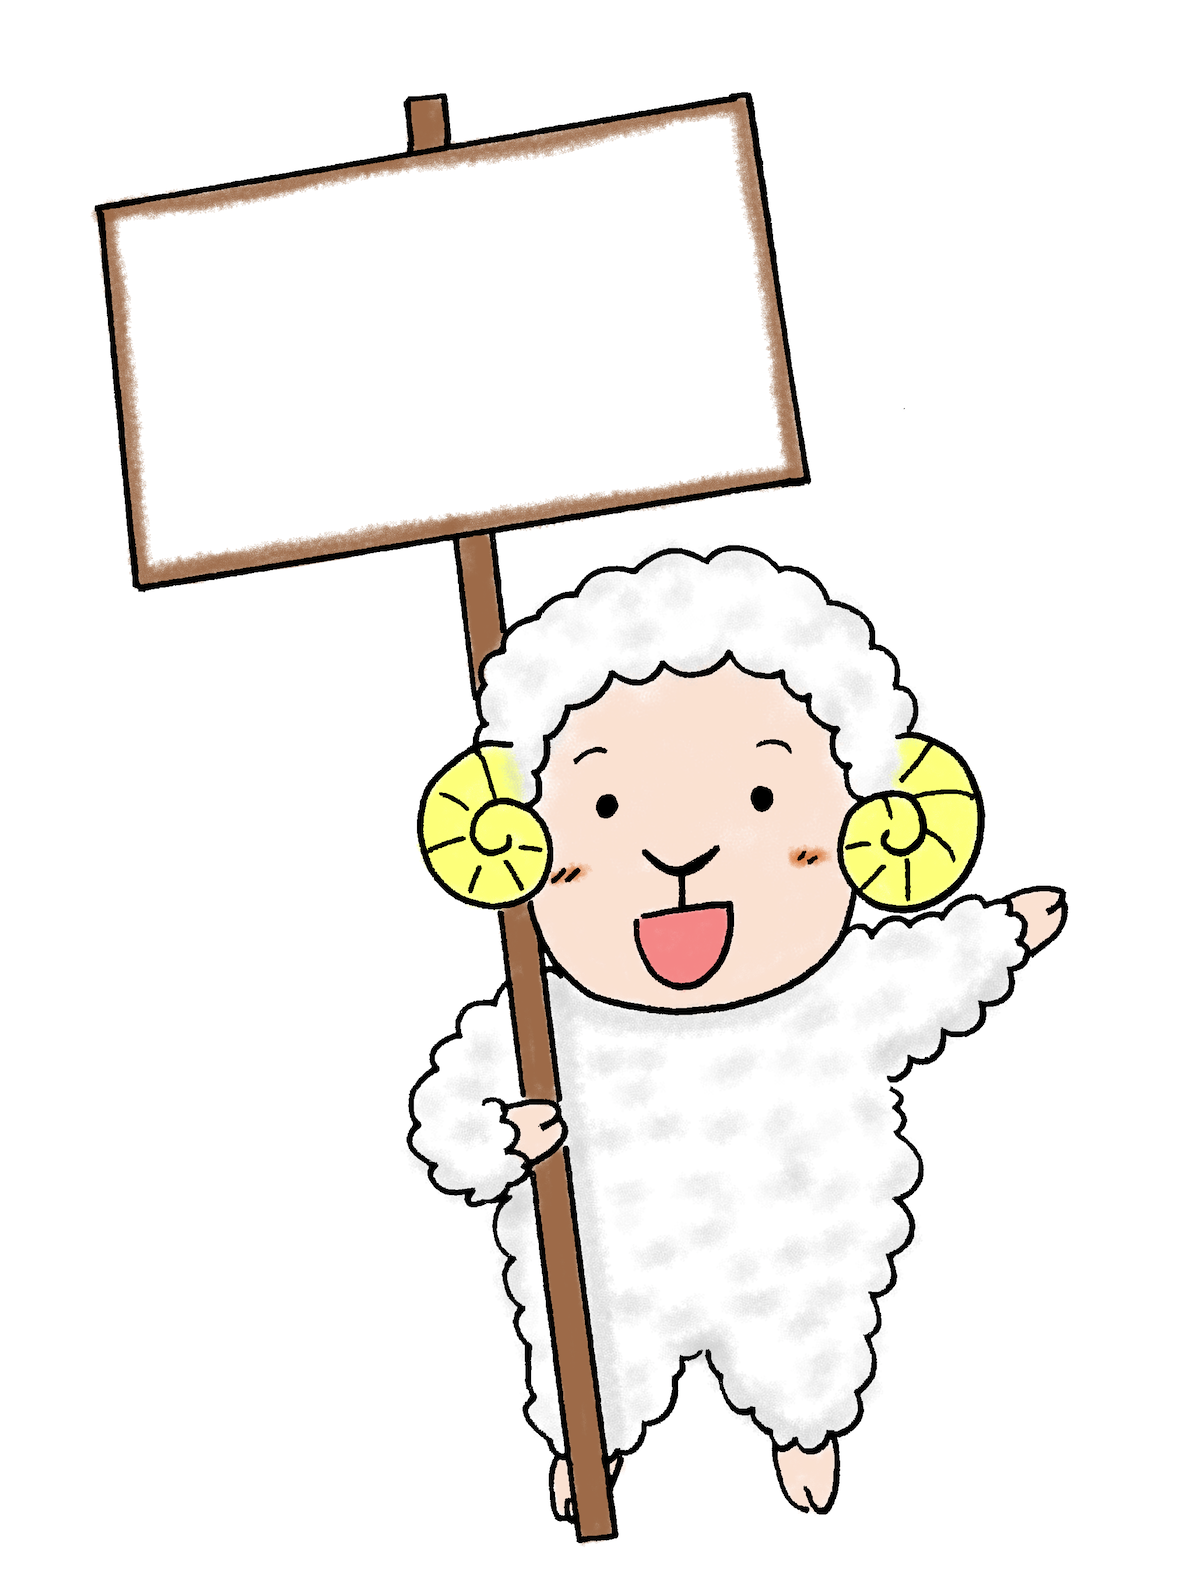 プラカードを持って笑顔の羊 ひつじ2015年賀状素材 無料イラスト配布サイトマンガトップ